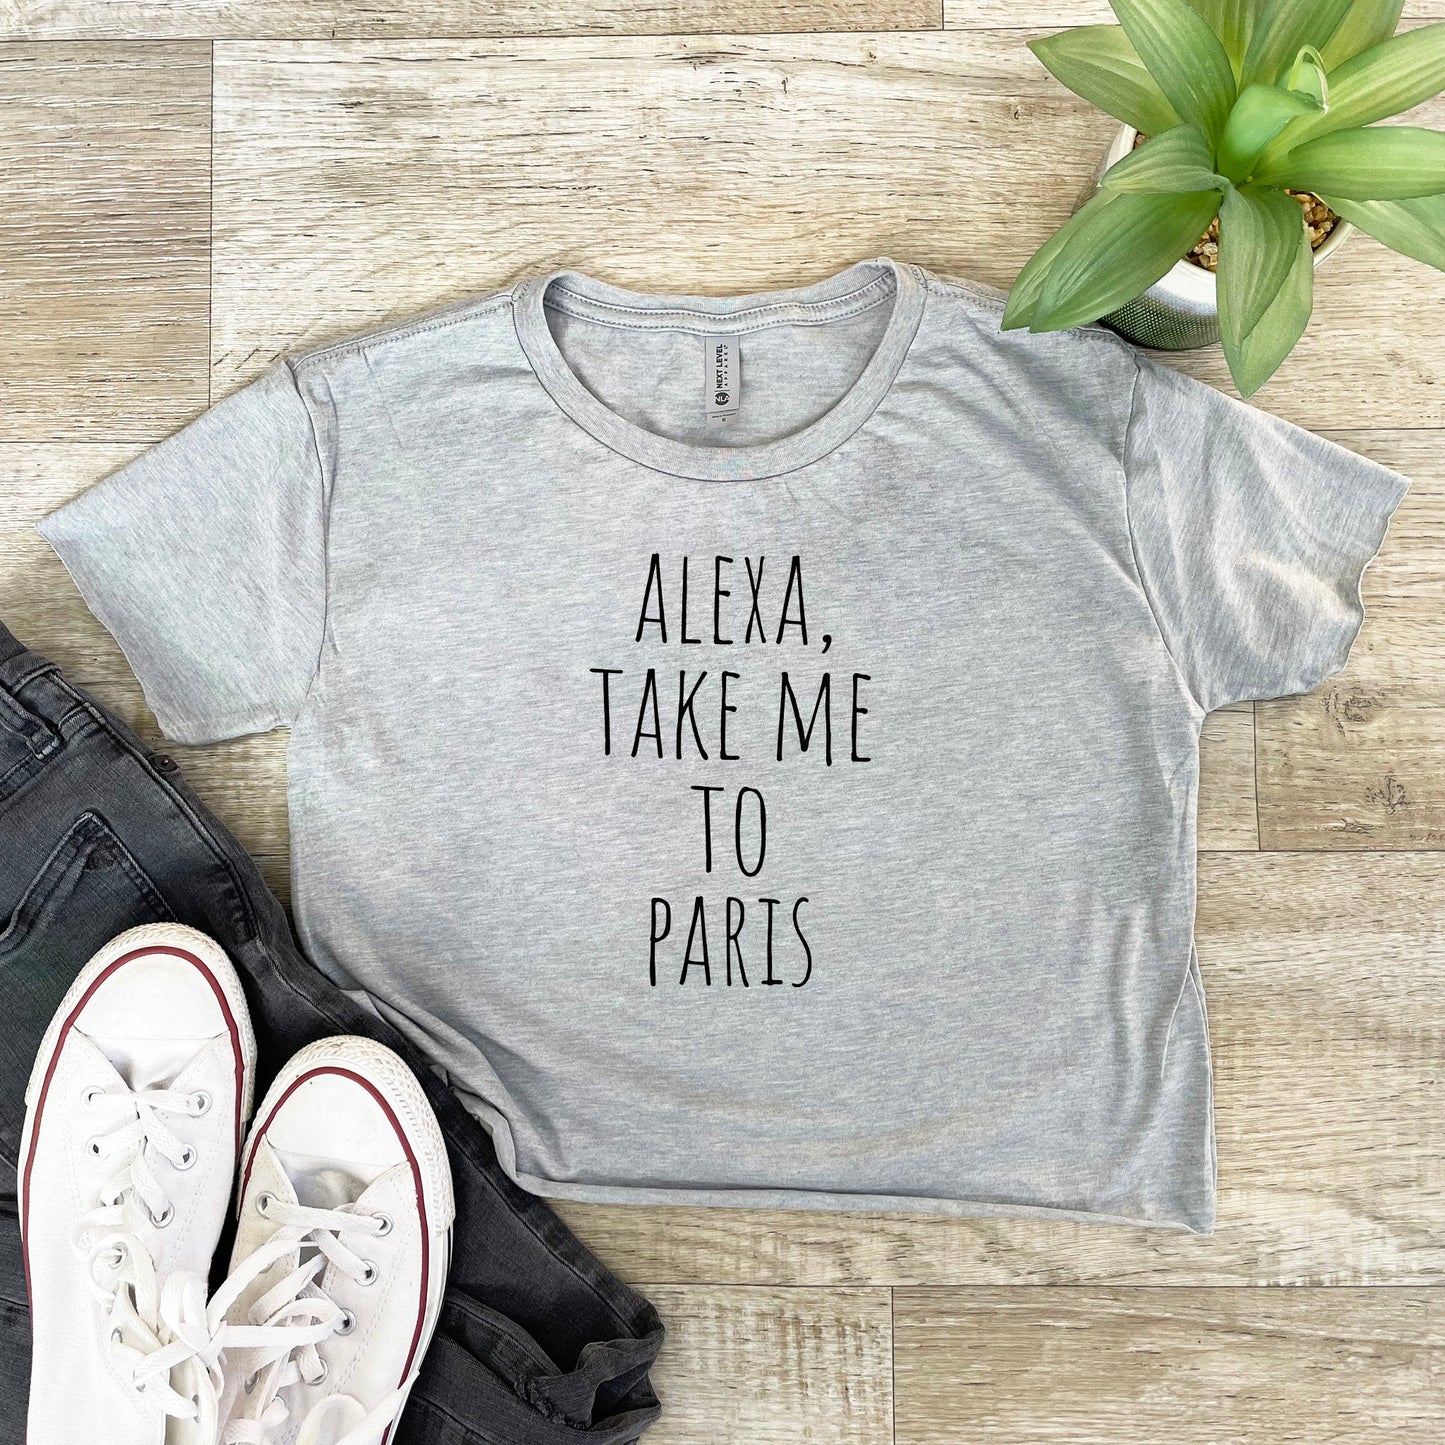 Alexa, Take Me To Paris - Women's Crop Tee - Heather Gray or Gold